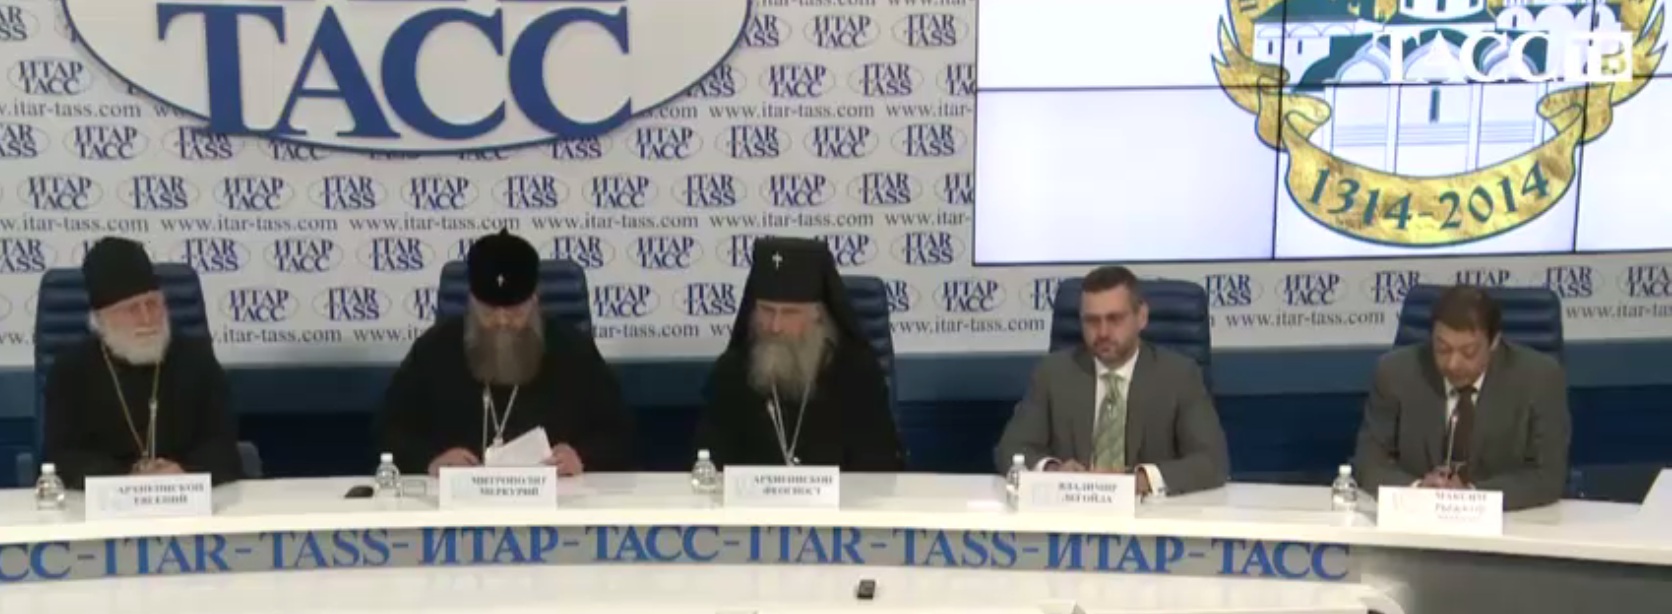 Пресс-конференция в ИТАР-ТАСС, посвященная празднованию 700-летия со дня рождения преподобного Сергия Радонежского